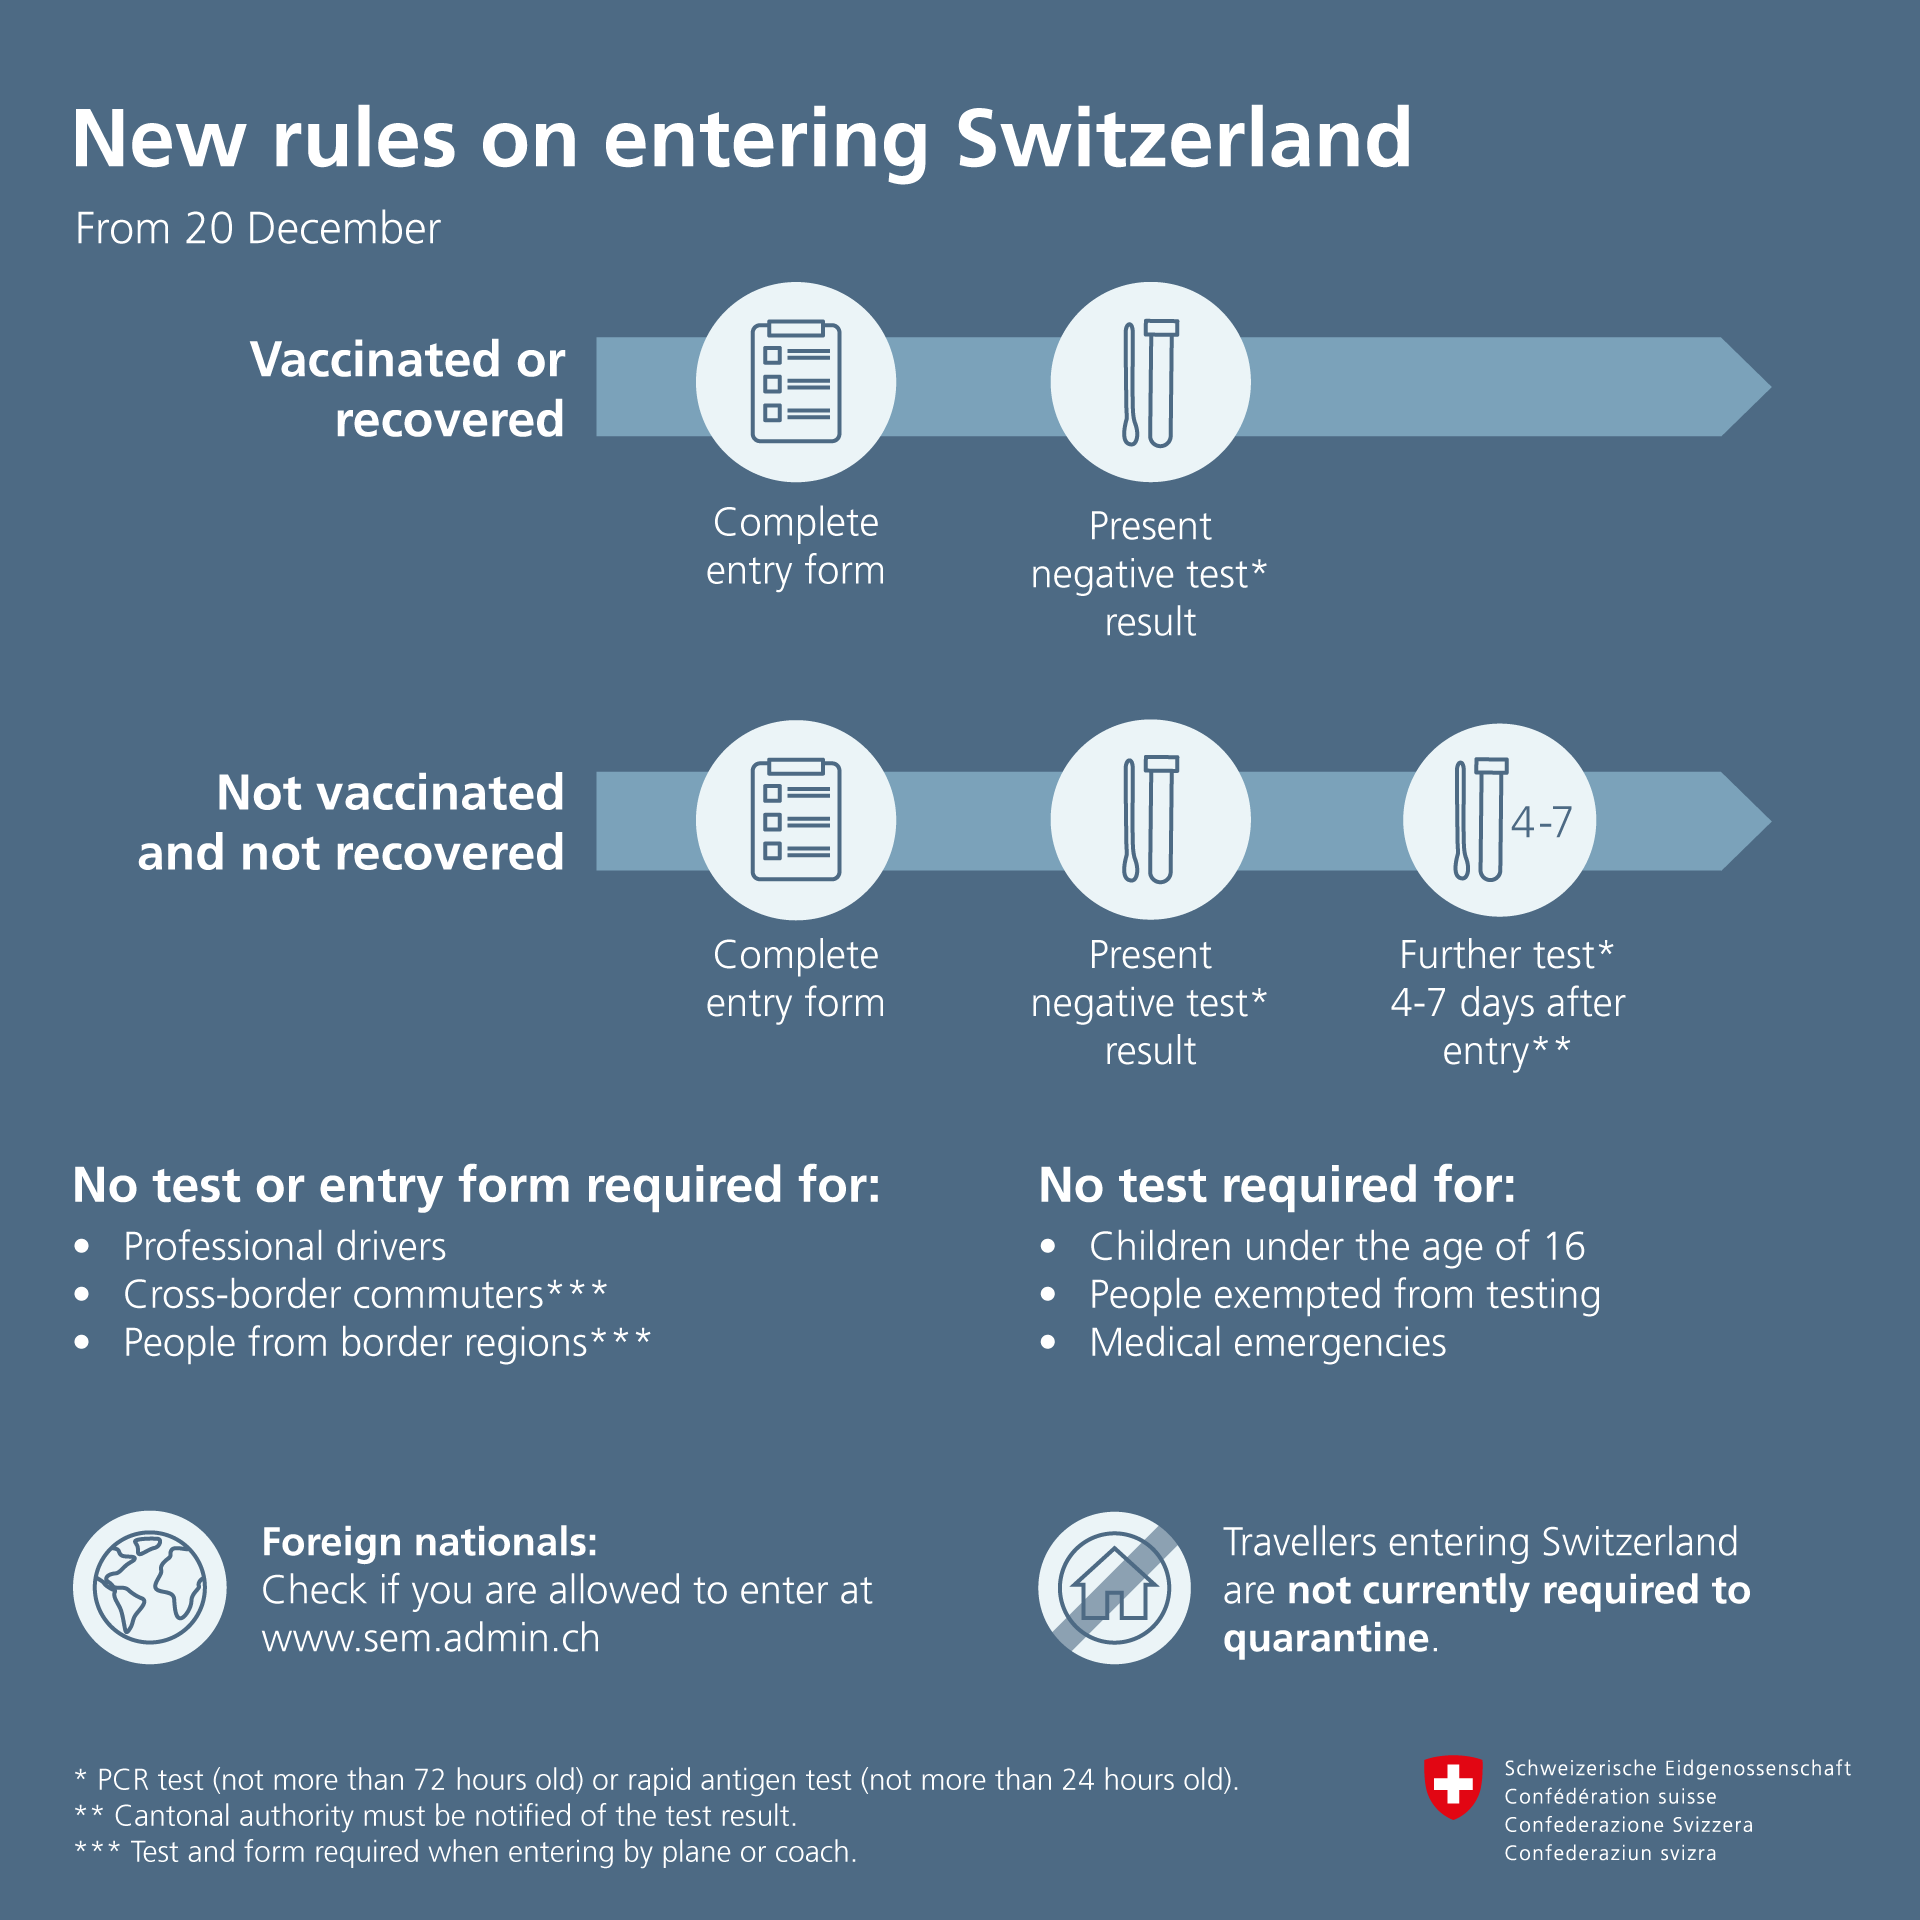 Leegyszerűsítve: bejutás Svájcba